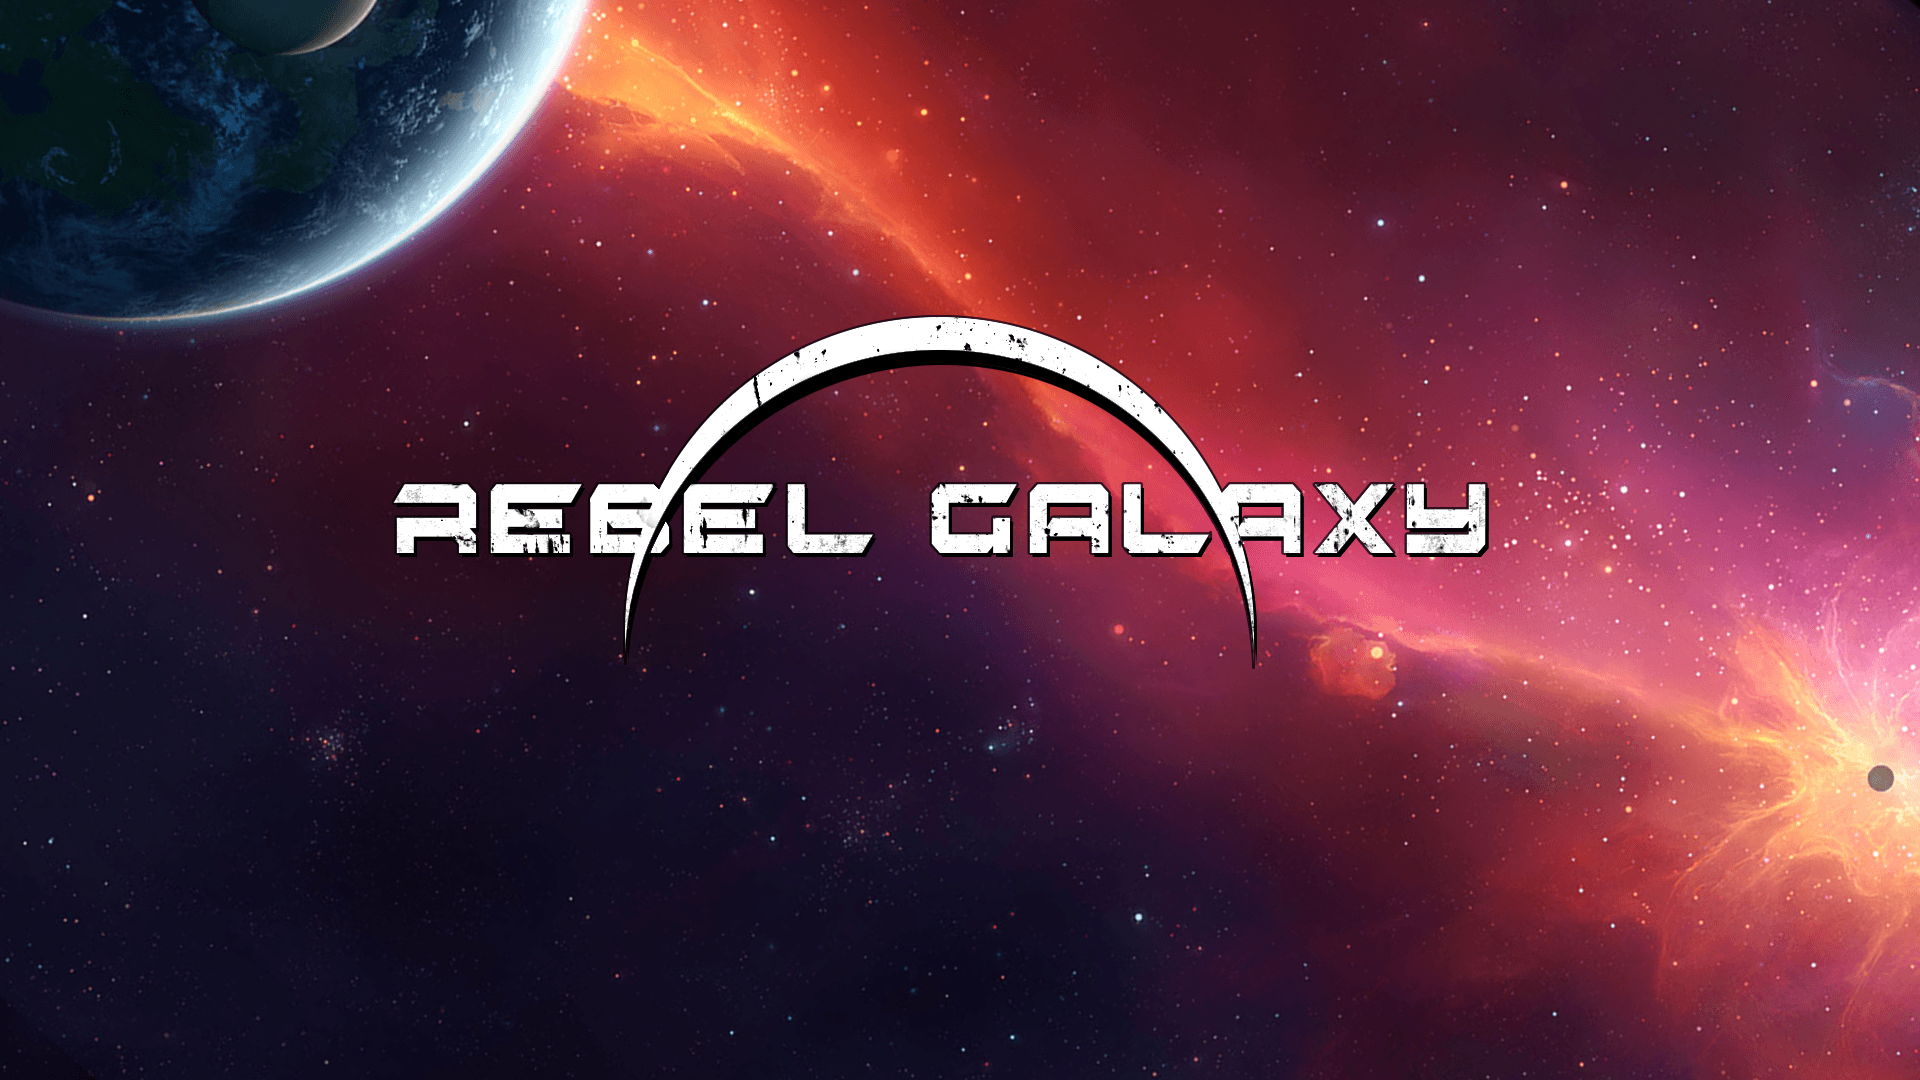 1920x1080 Hiện đã có - Rebel Galaxy!  - Blog ID